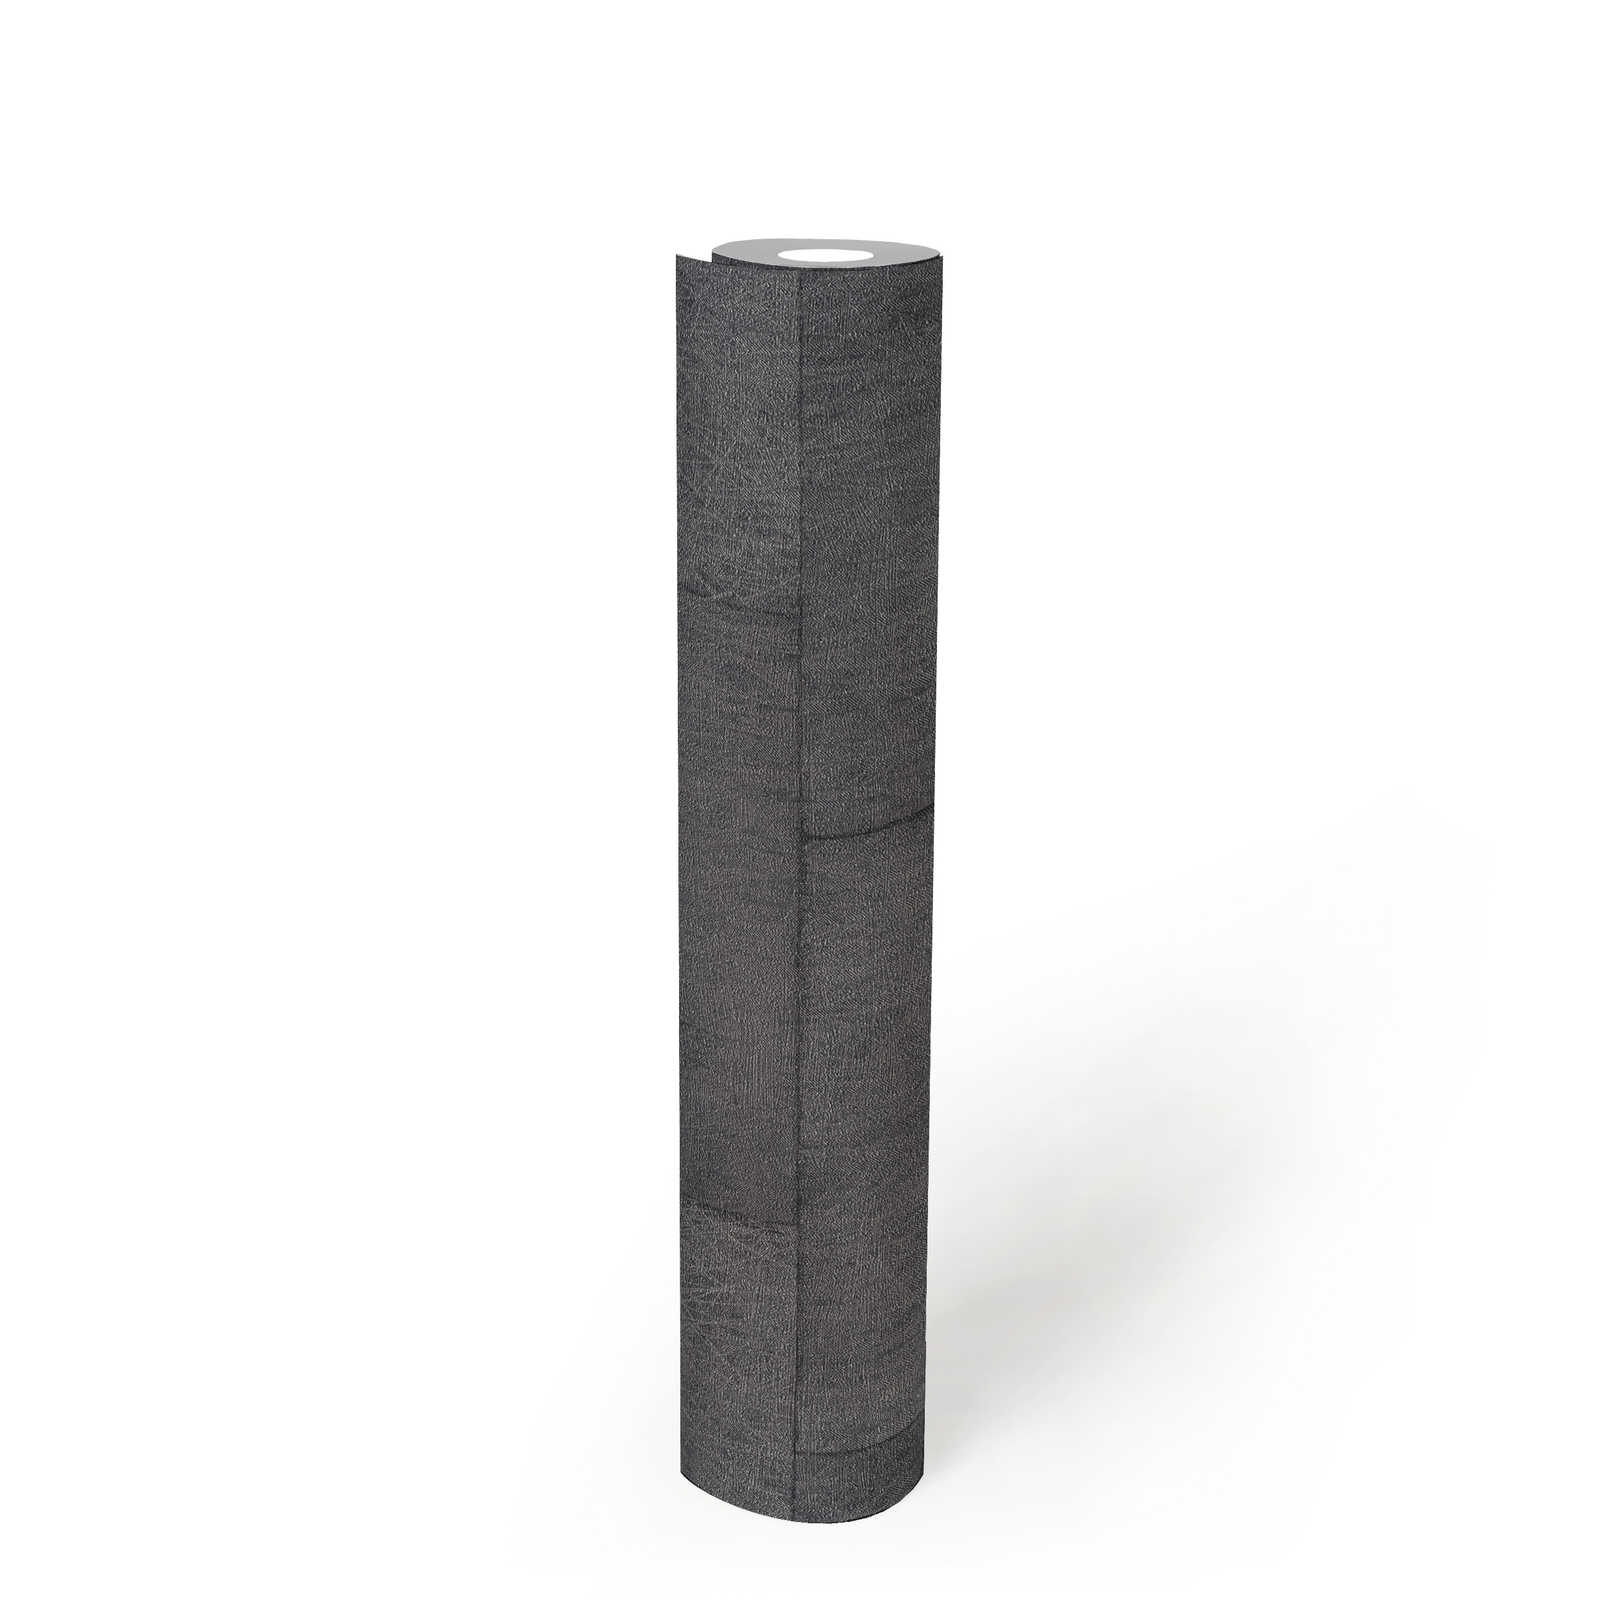             Papel pintado de ladrillo con efecto texturizado, brillante - gris, negro
        